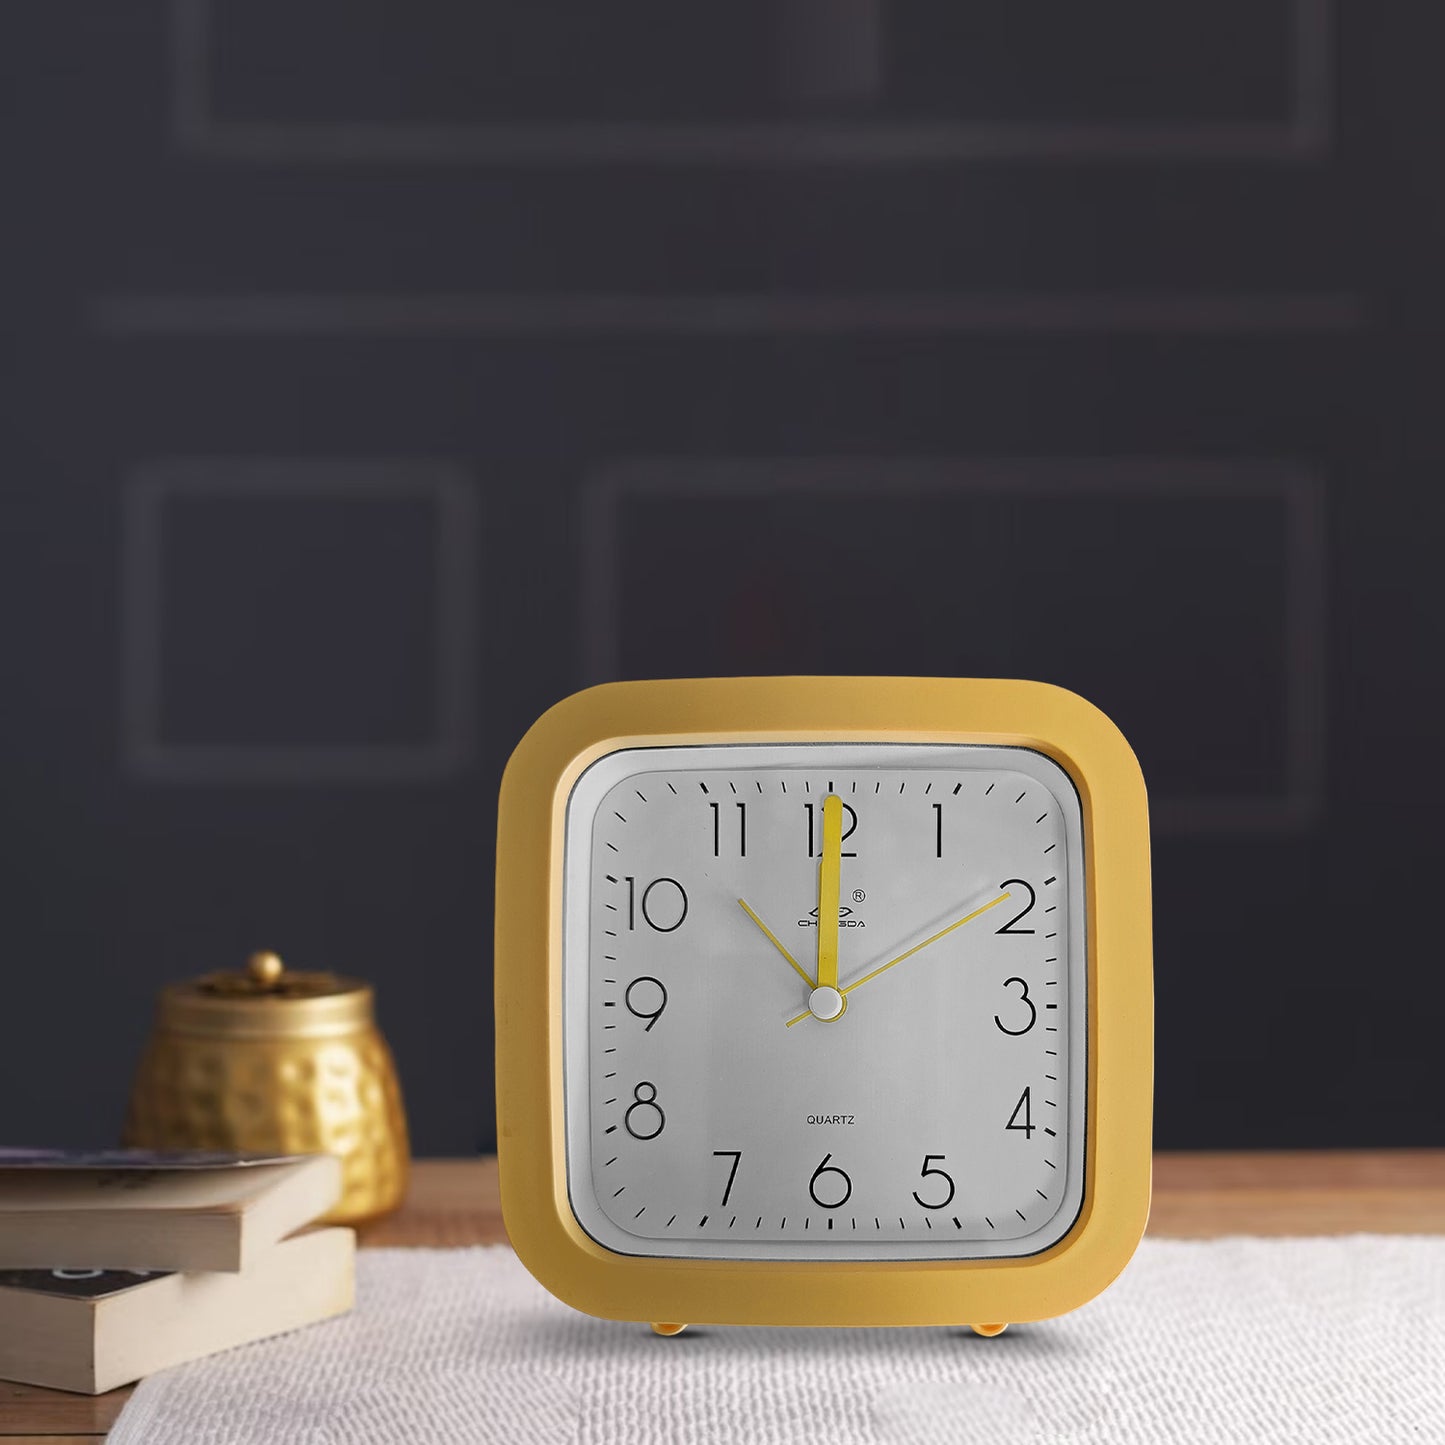 retro alarm clock